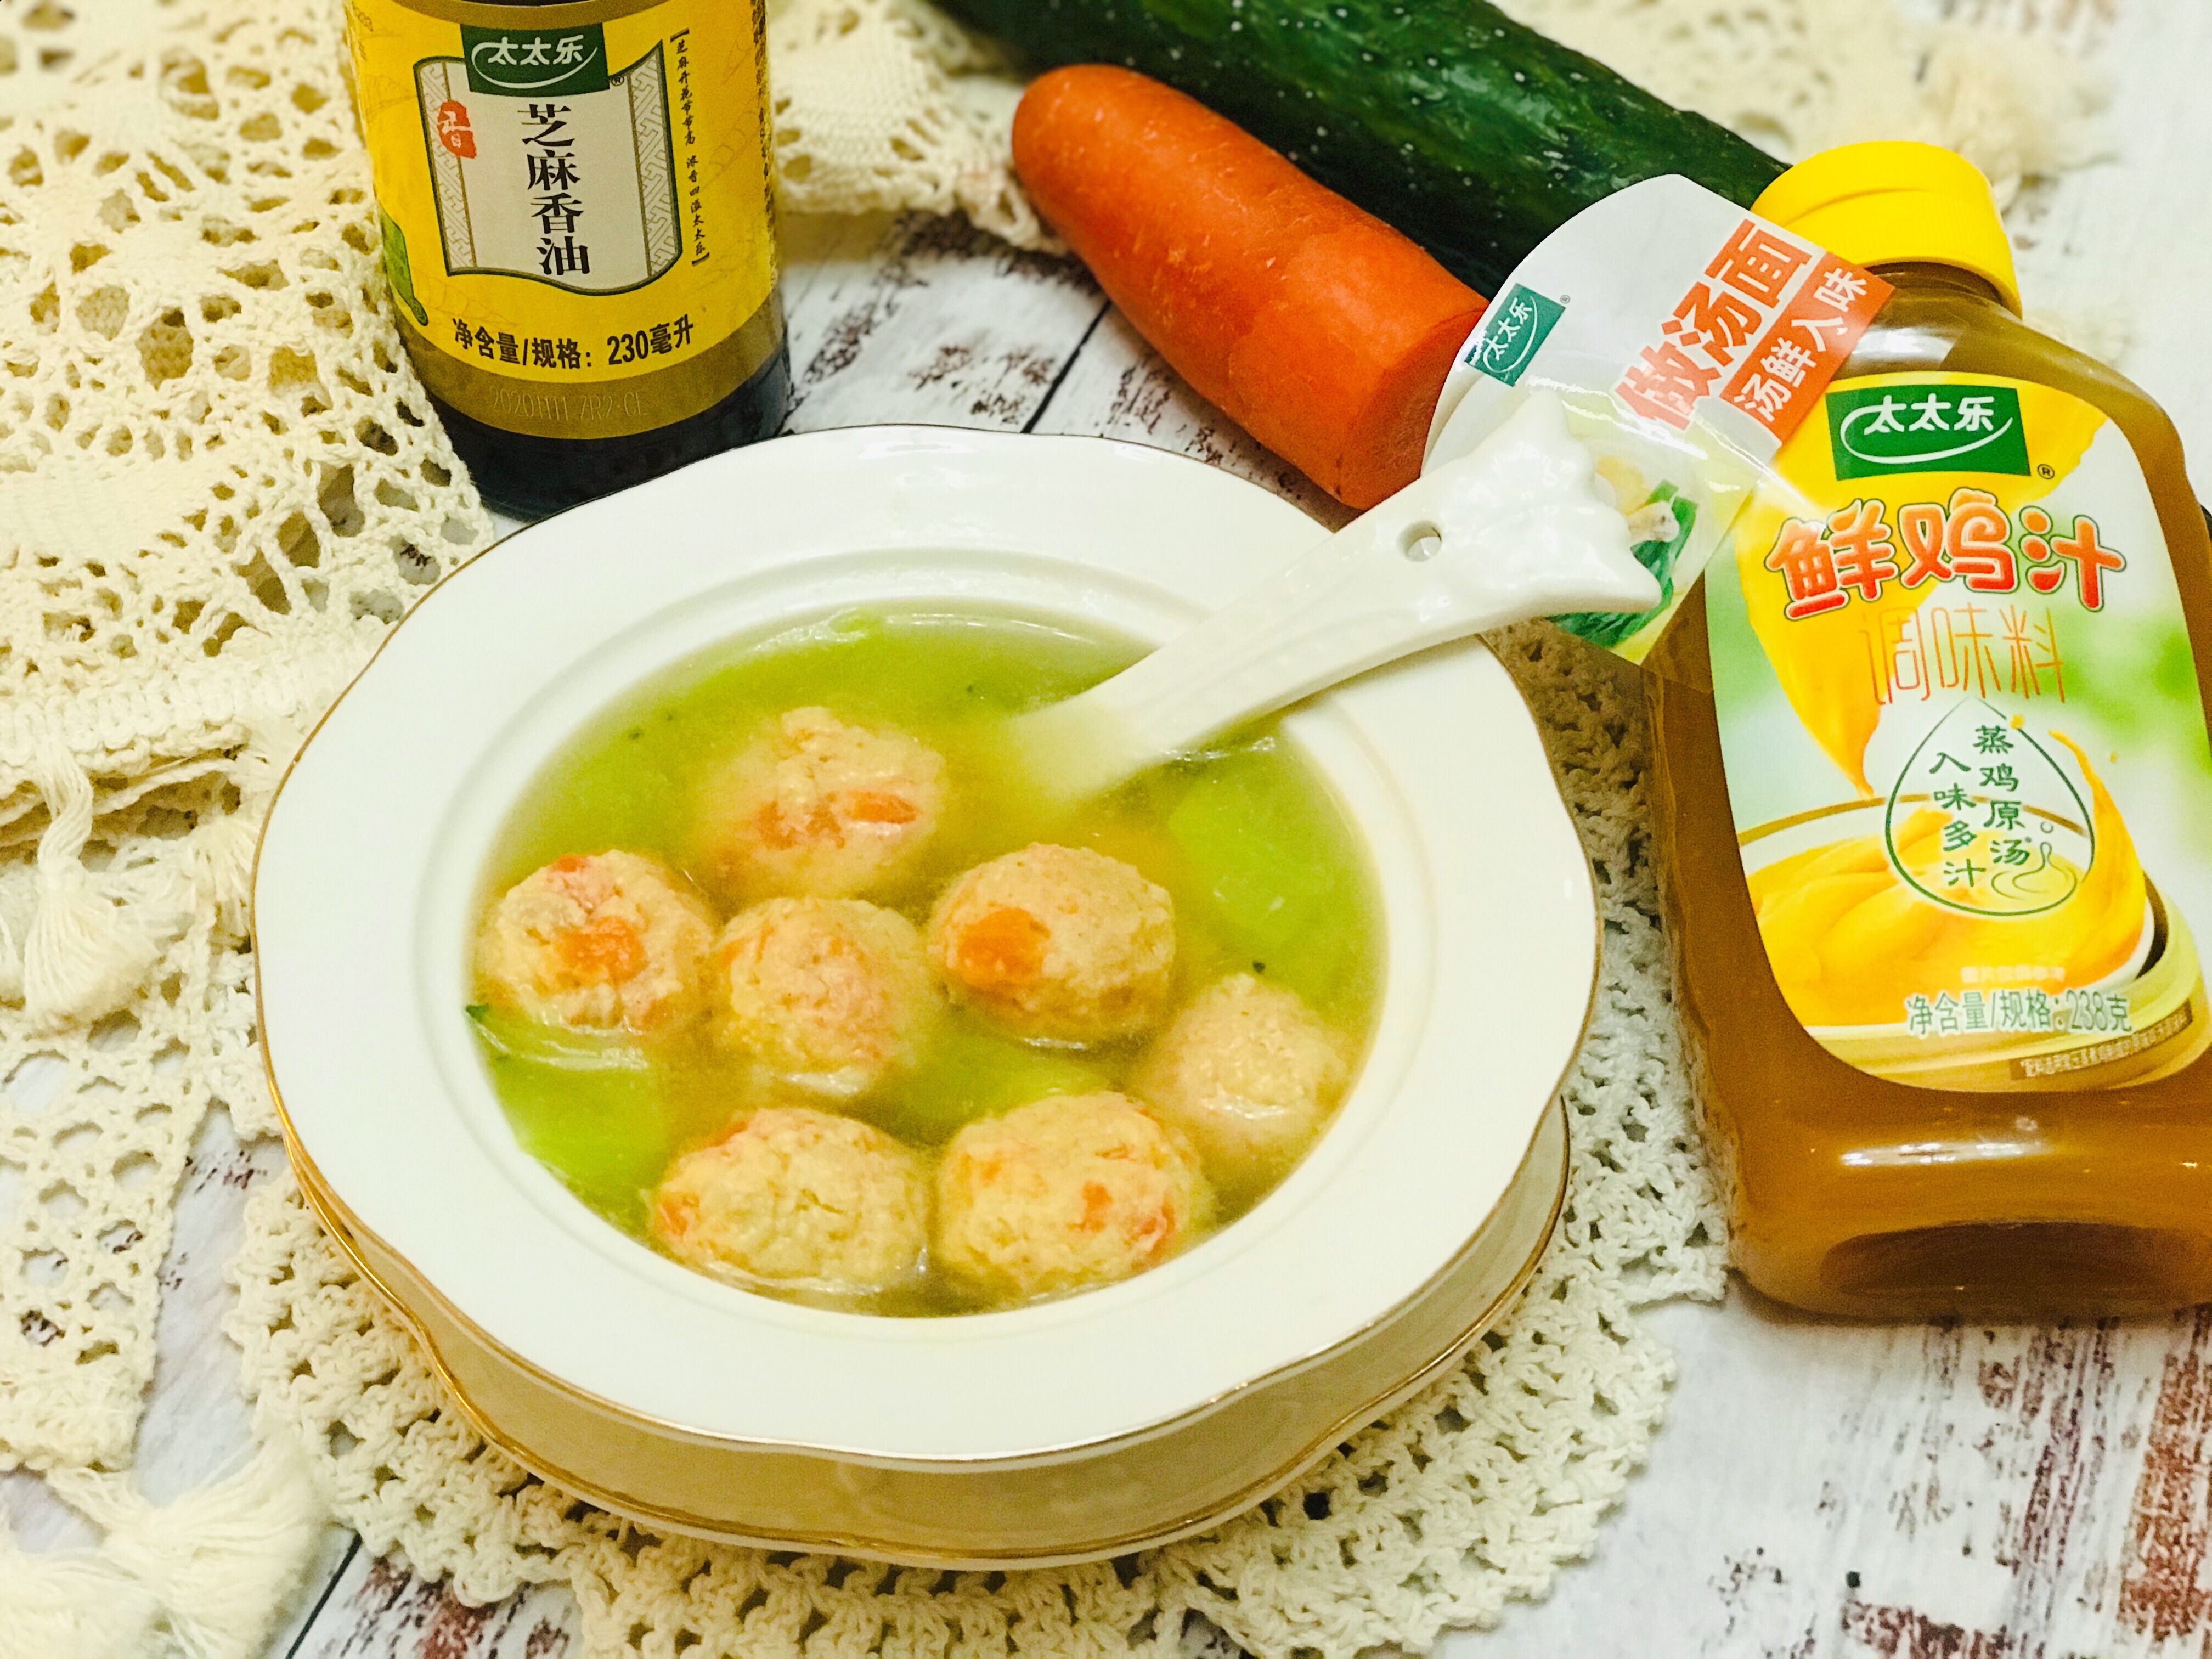 胡萝卜鸡肉汤丸+太太乐鲜鸡汁芝麻香油的做法